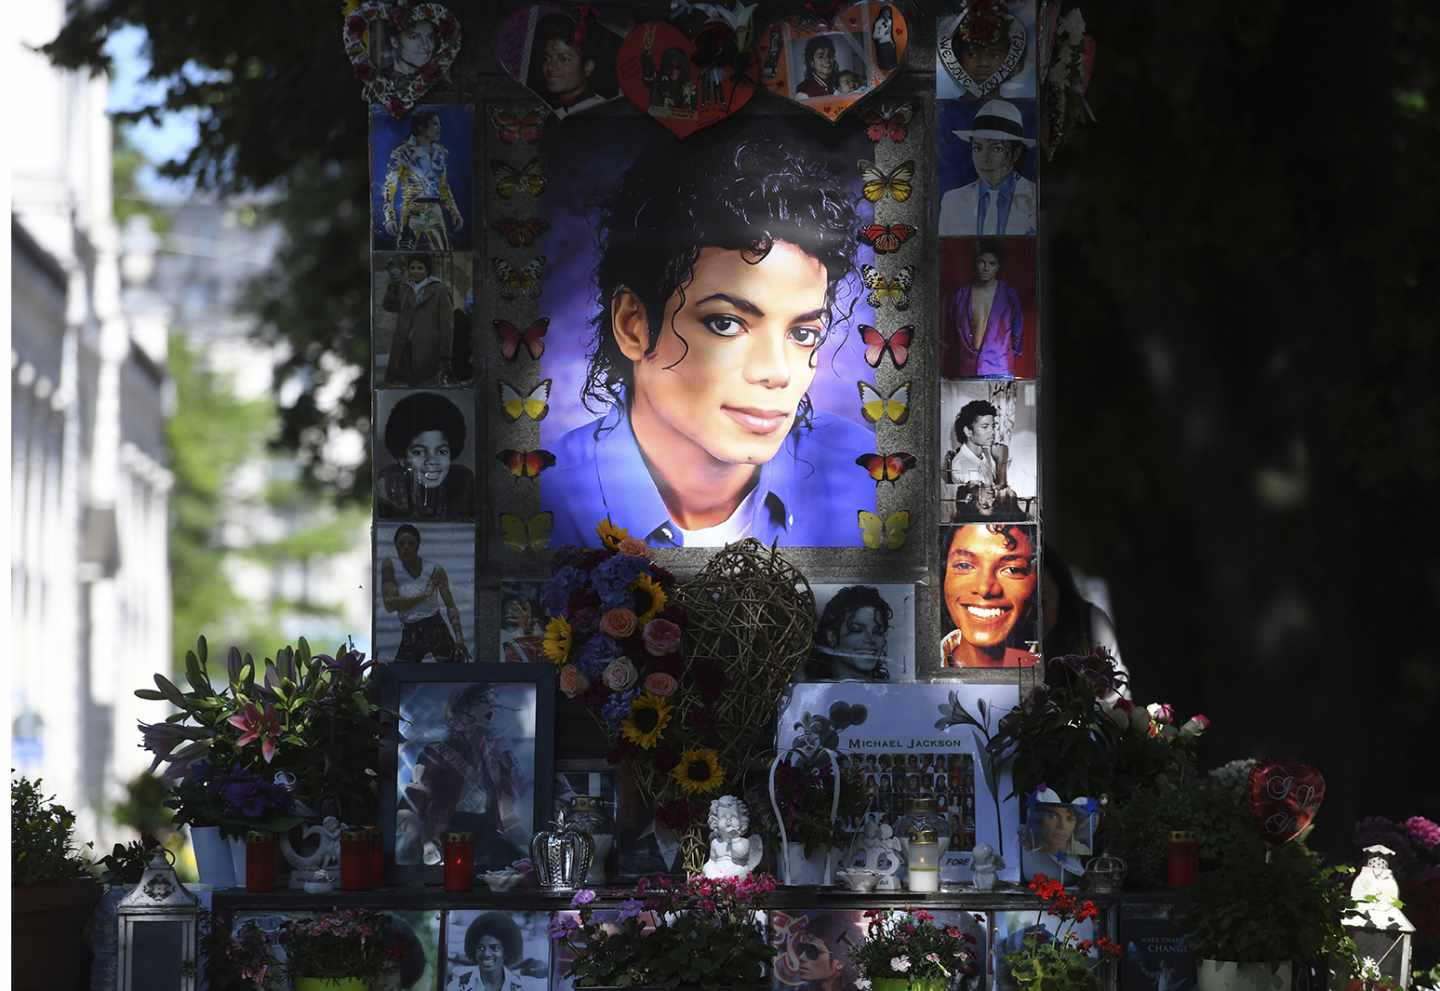 Santuario en homenaje al Rey del Pop, Michael Jackson